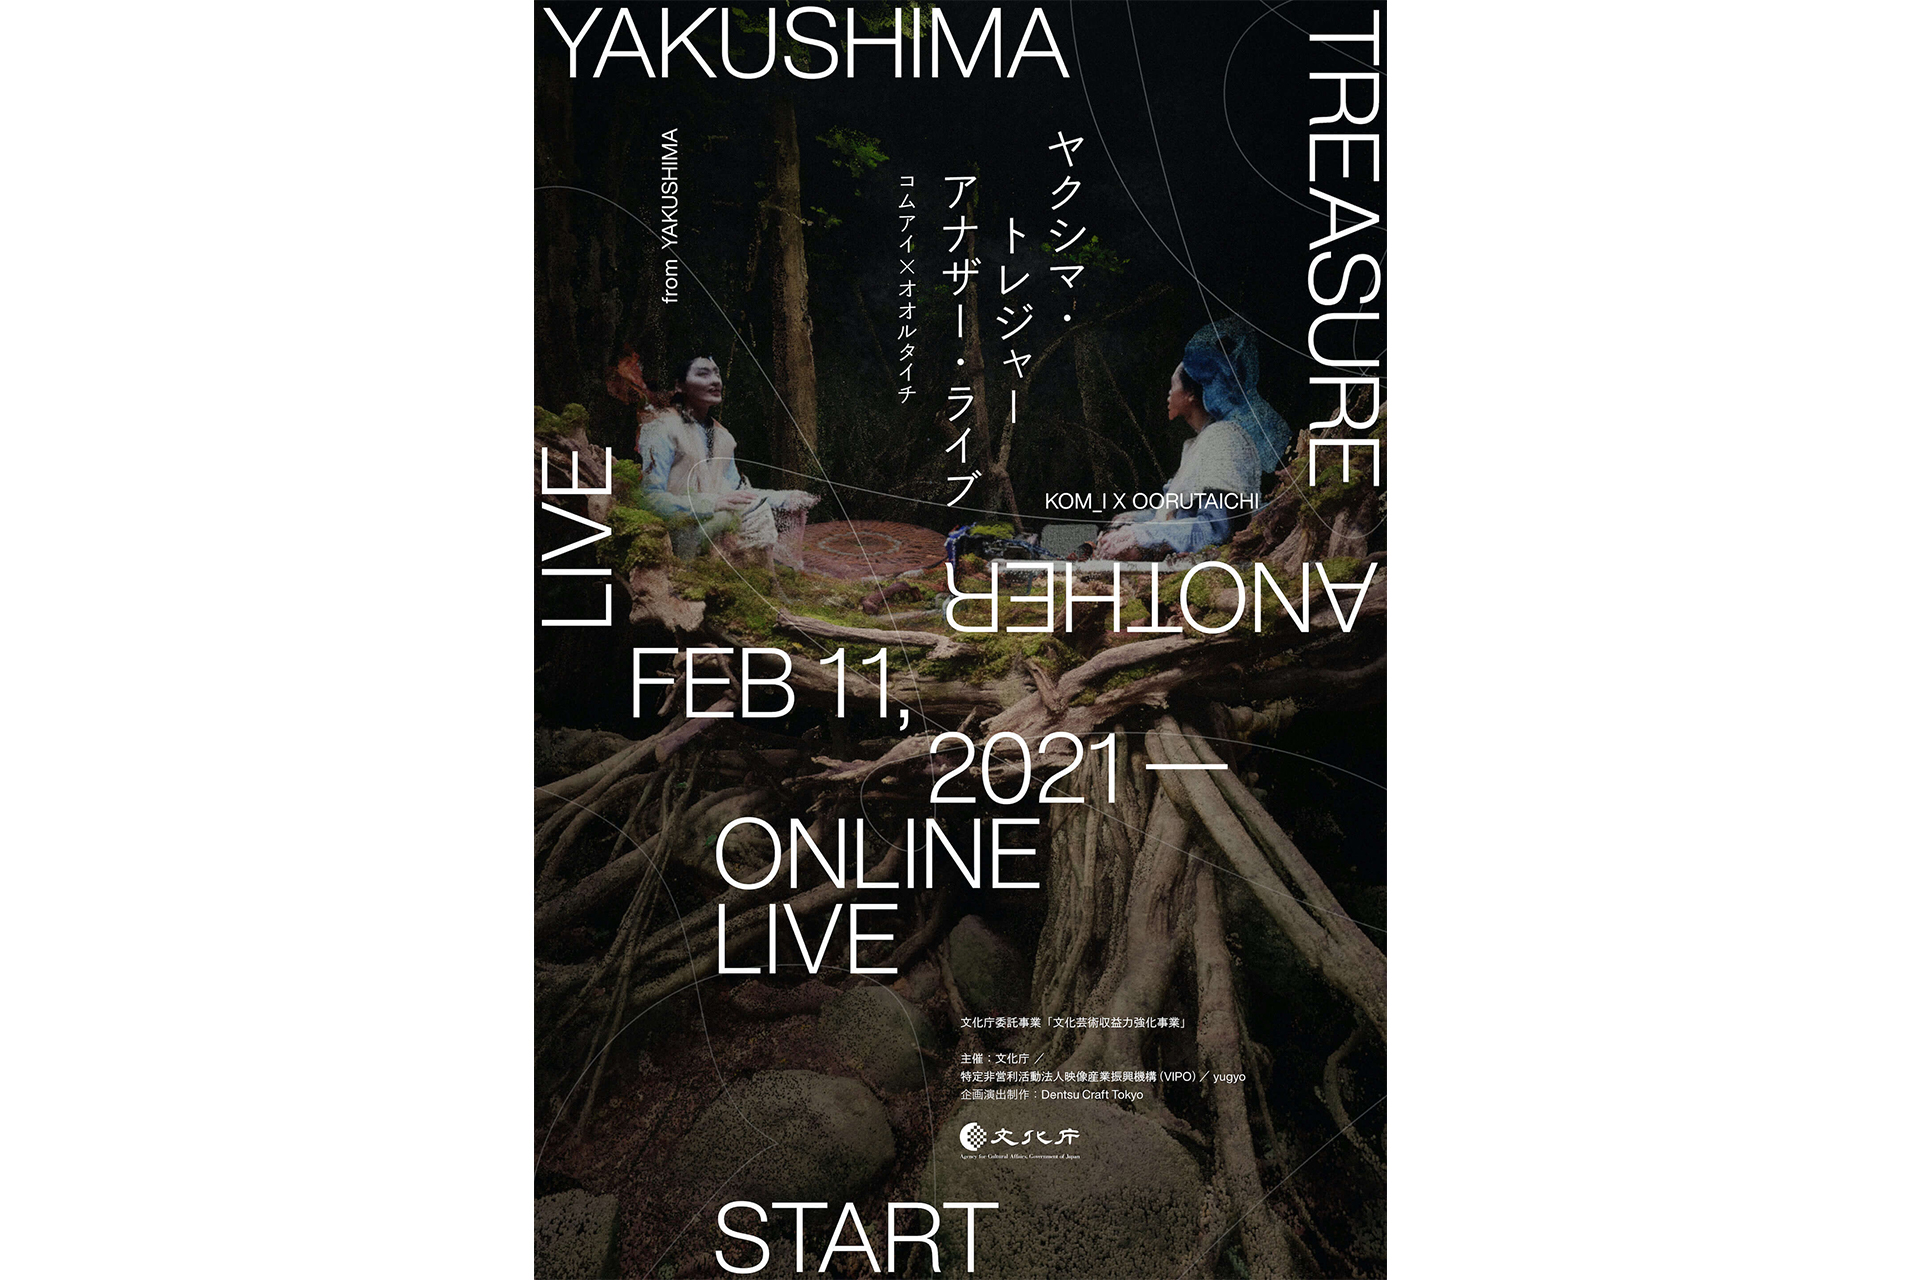 YAKUSHIMA TREASUREのライブ映像作品が配信スタート。屋久島「ガジュマルの森」でのパフォーマンスを空間ごとスキャン